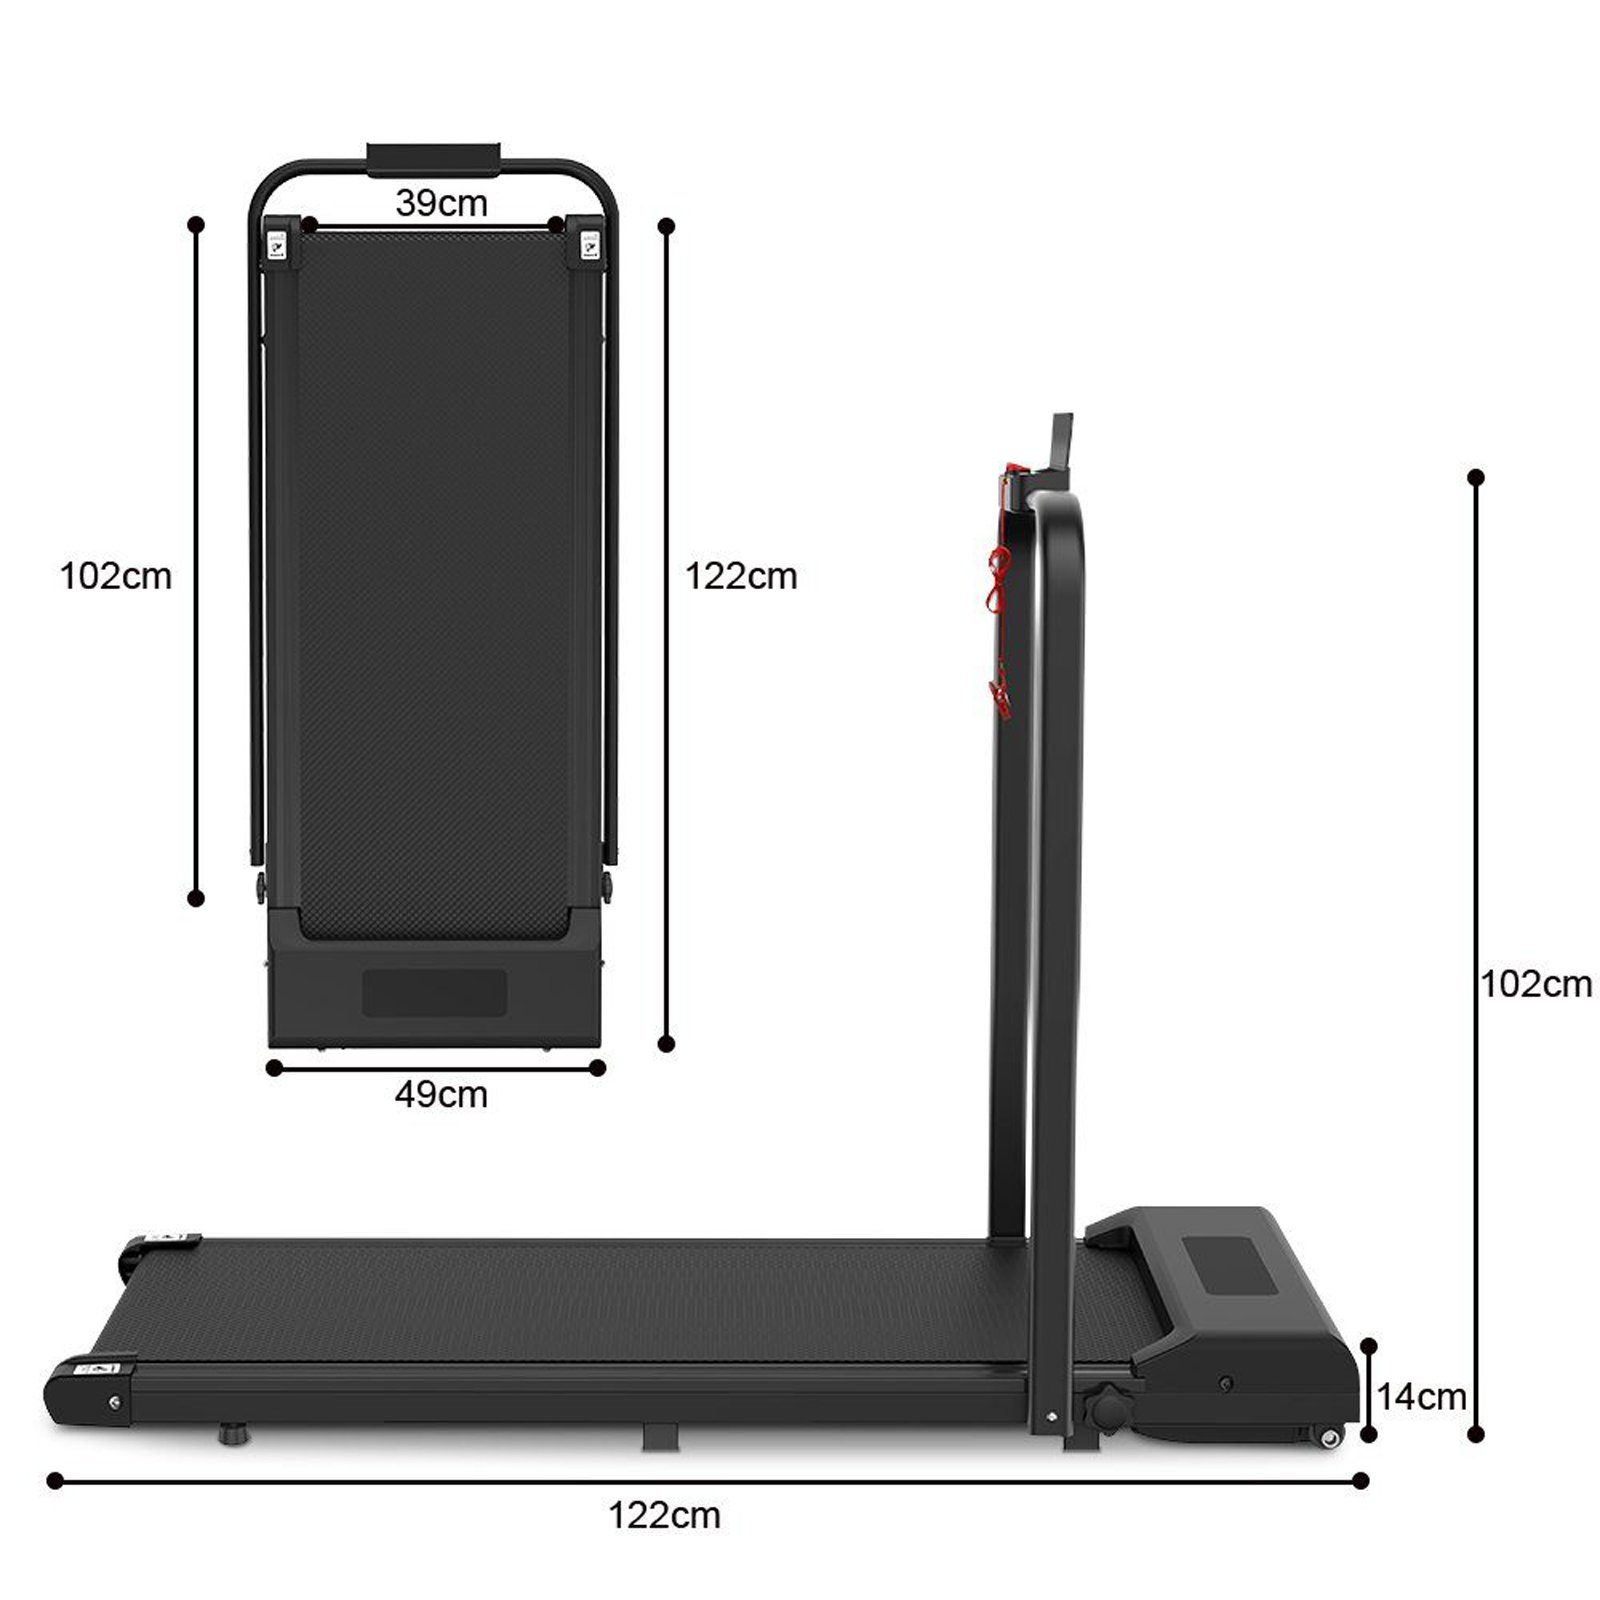 Sinaopus Laufband Faltbares Laufband,für Fitnessgerät klappbar LB01, LED leise, schwarz Treadmill 2-in-1 mit 1-10KM/H Display, zuhause